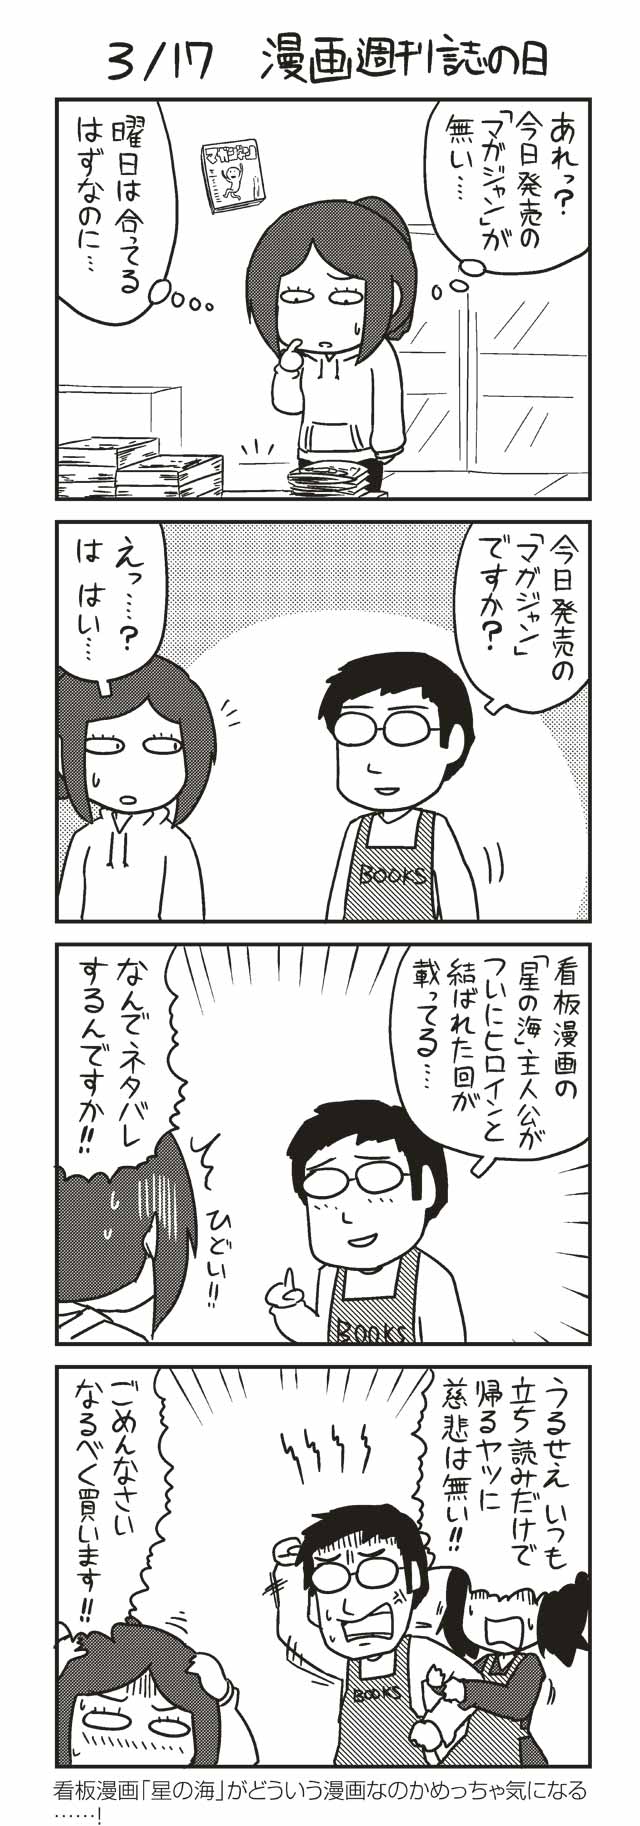 ３ １７ 漫画週刊誌の日 ノヒマンガ ポン ツイ４ 最前線